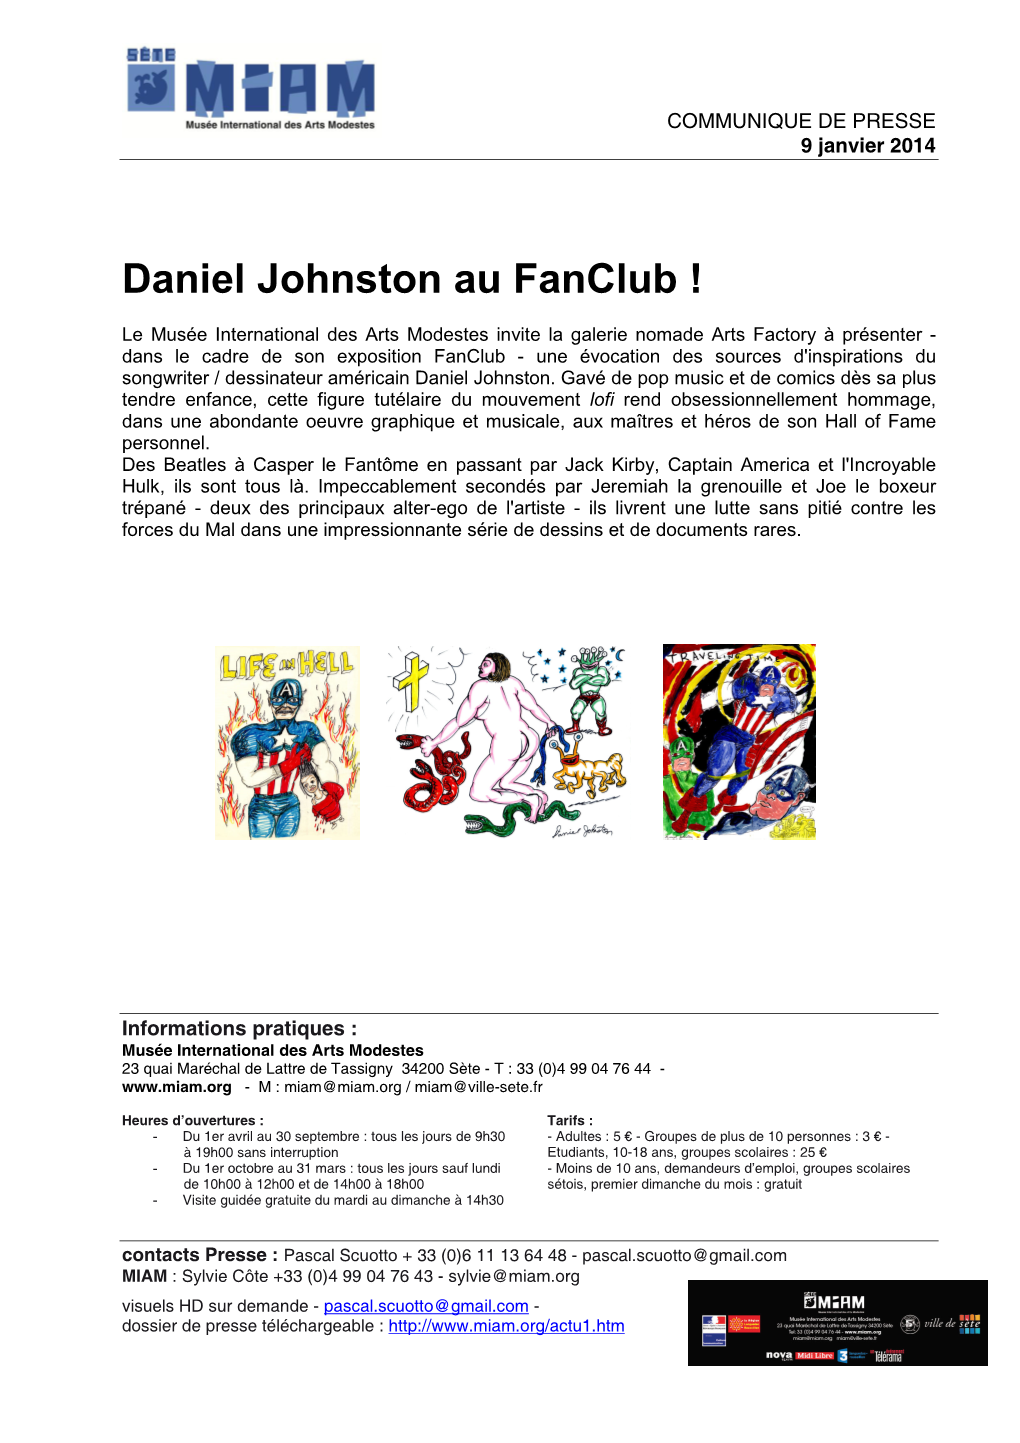 Daniel Johnston Au Fanclub !